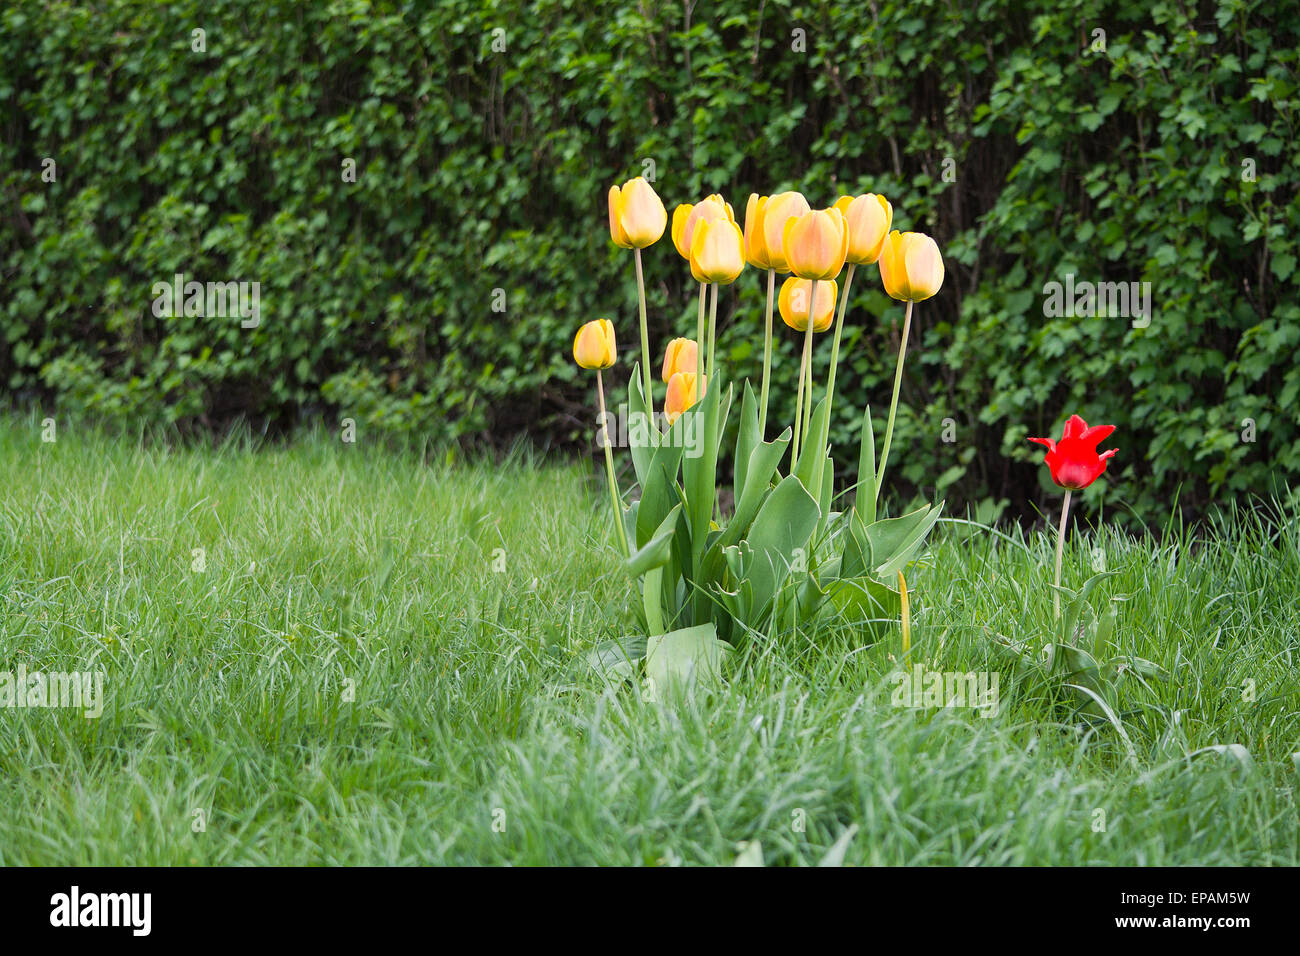 Rote und gelbe Tulpen in den grünen Rasen von einem Baum an einem sonnigen Tag des Frühlings, Schweden im Mai. Stockfoto